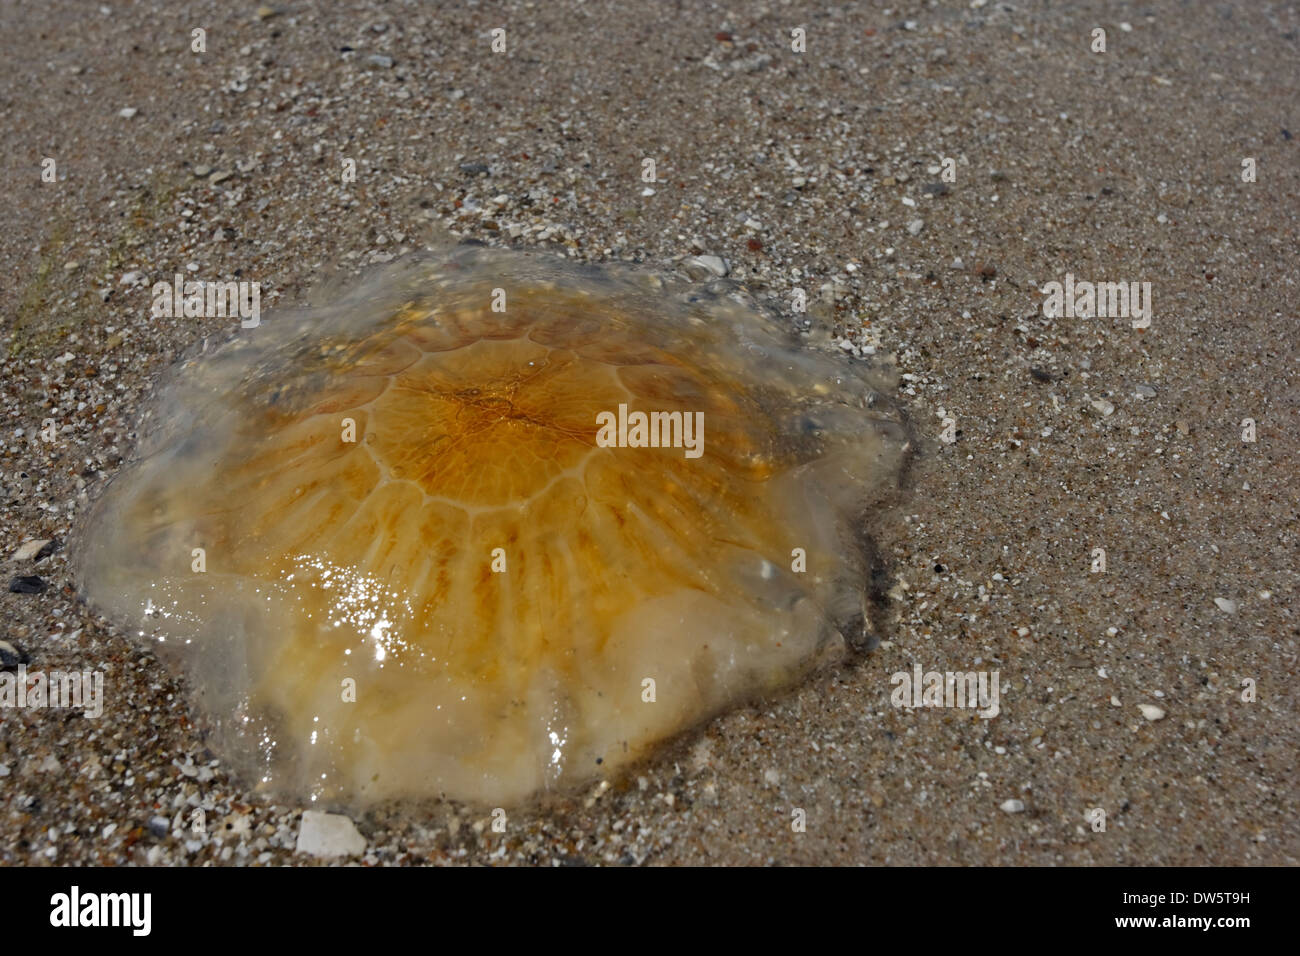 Ortie de mer (Cyanea capillata) sur la plage, le Kattegat Rørvig Nouvelle-Zélande Danemark Banque D'Images